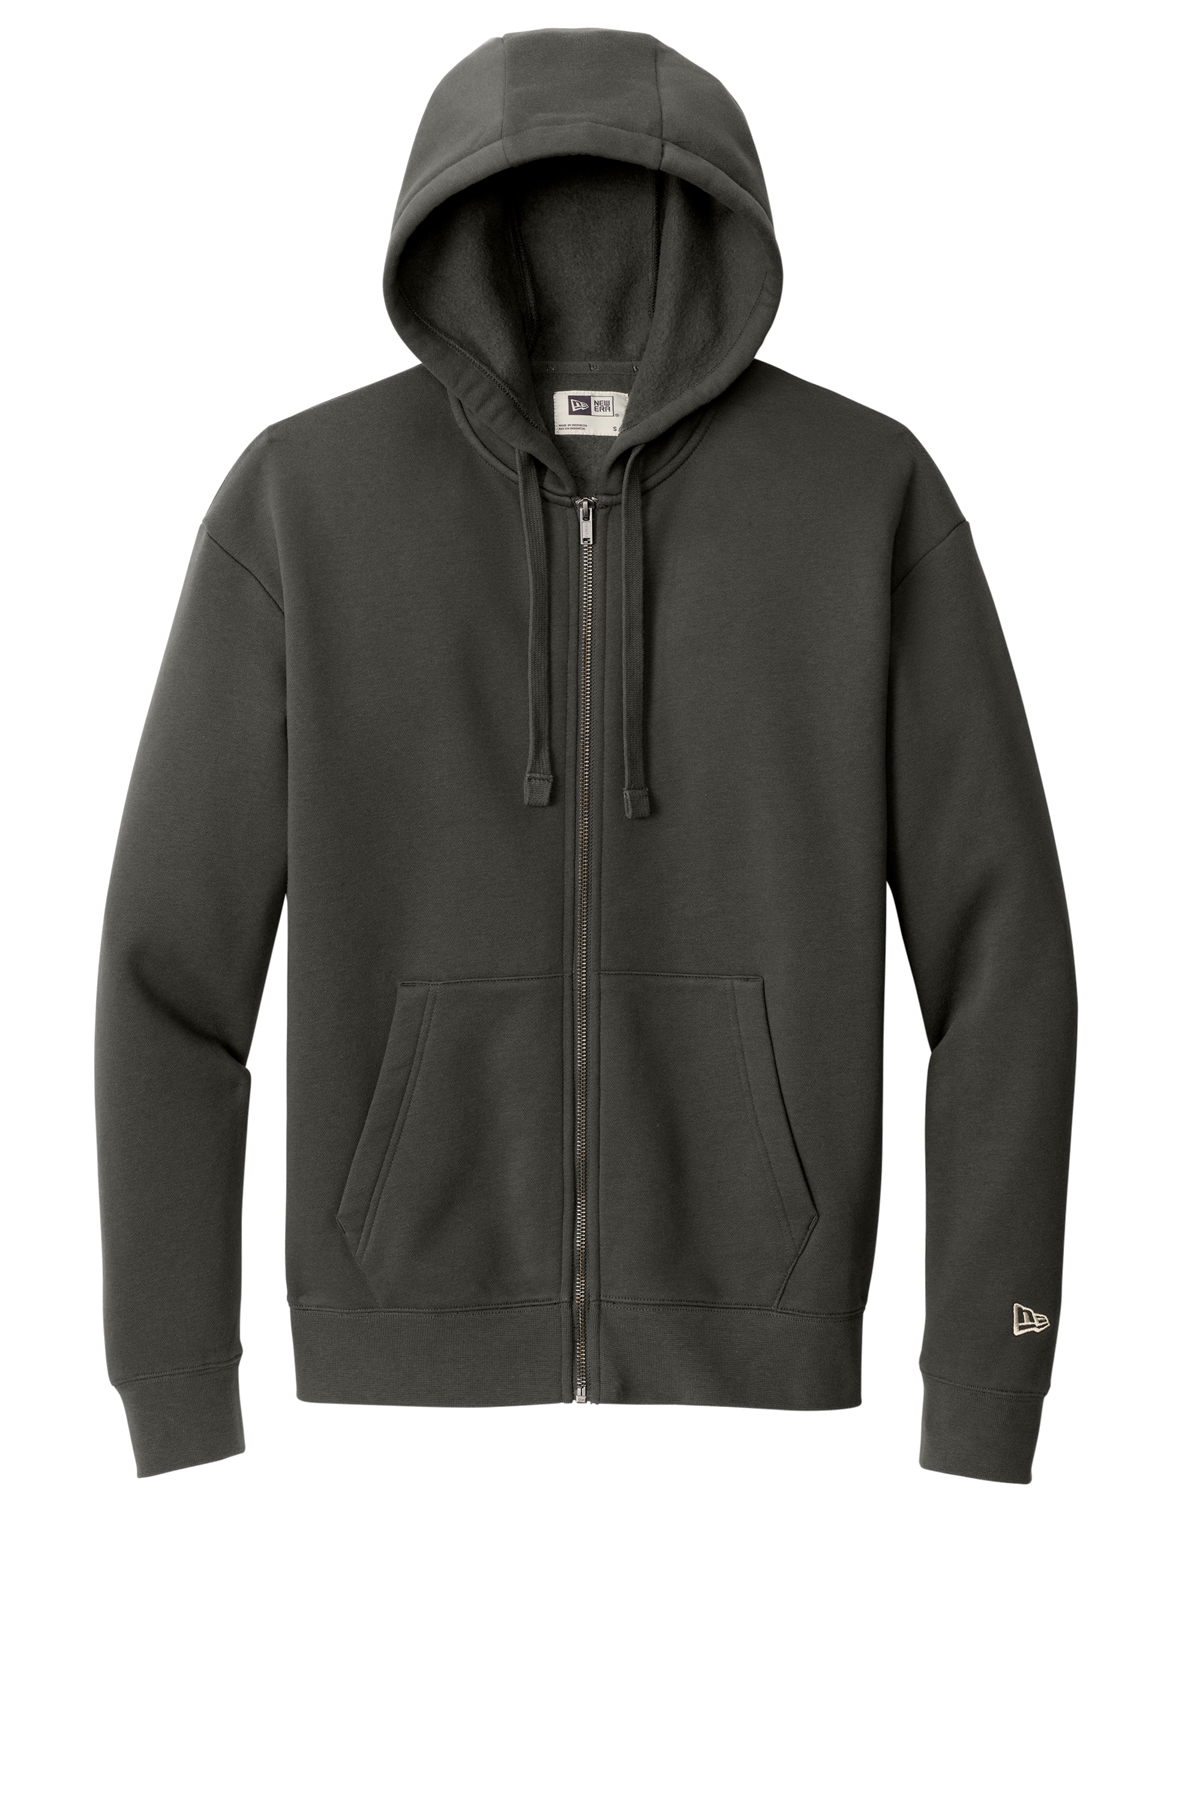 New Era Heritage Fleece Full-Zip Hoodie | Product | SanMar